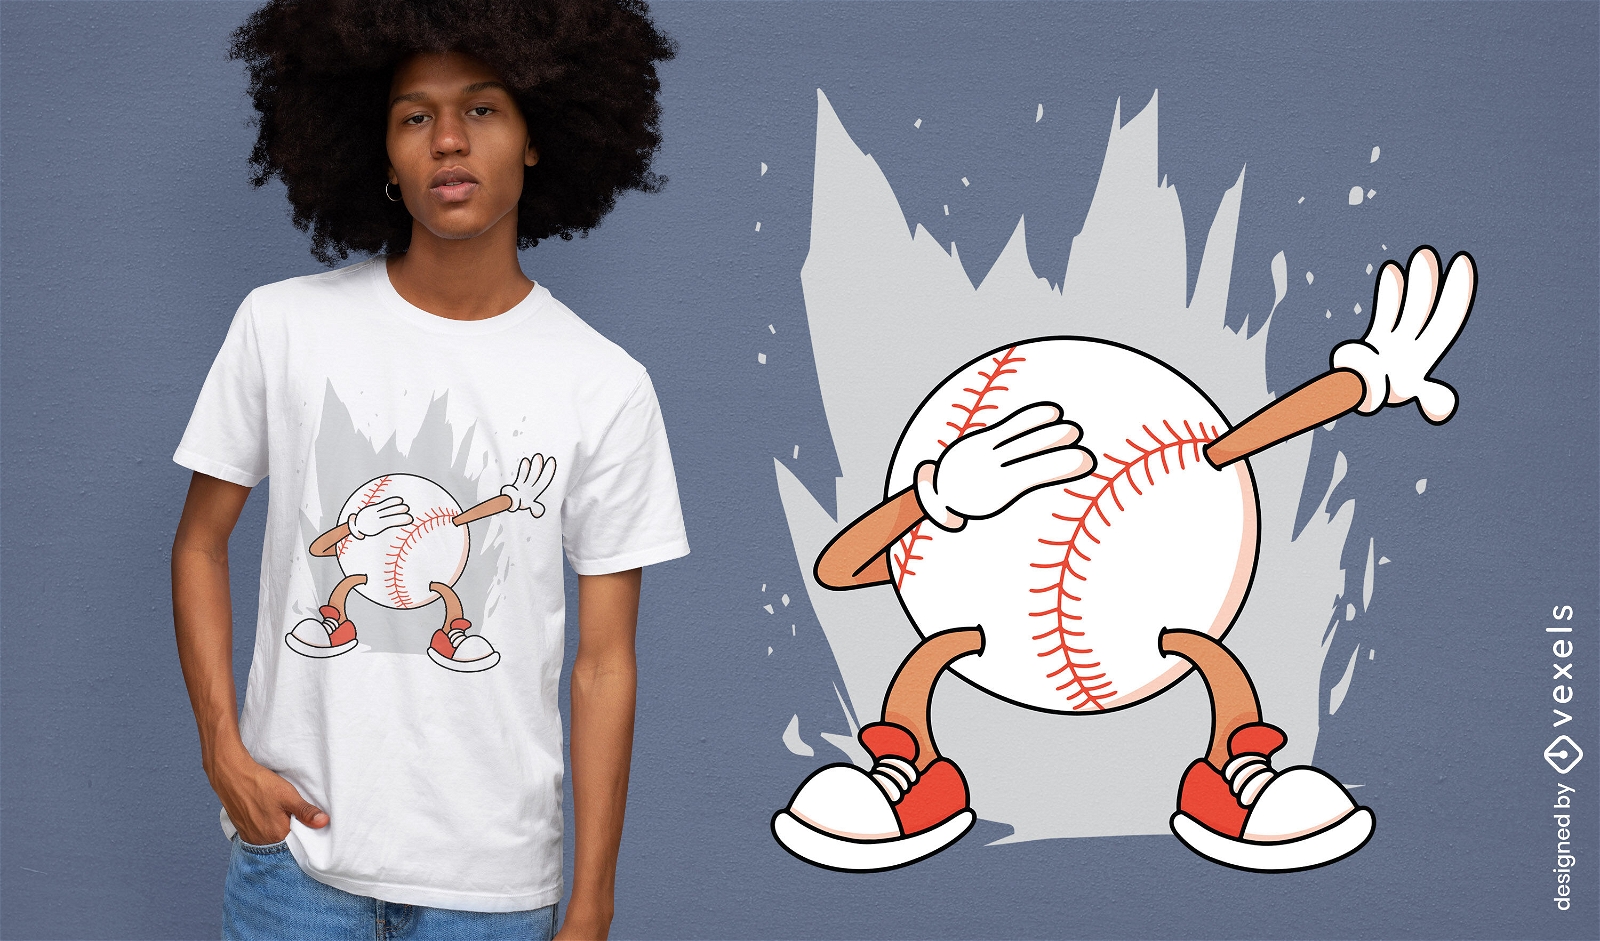 Dise?o de camiseta de dabbing de b?isbol.